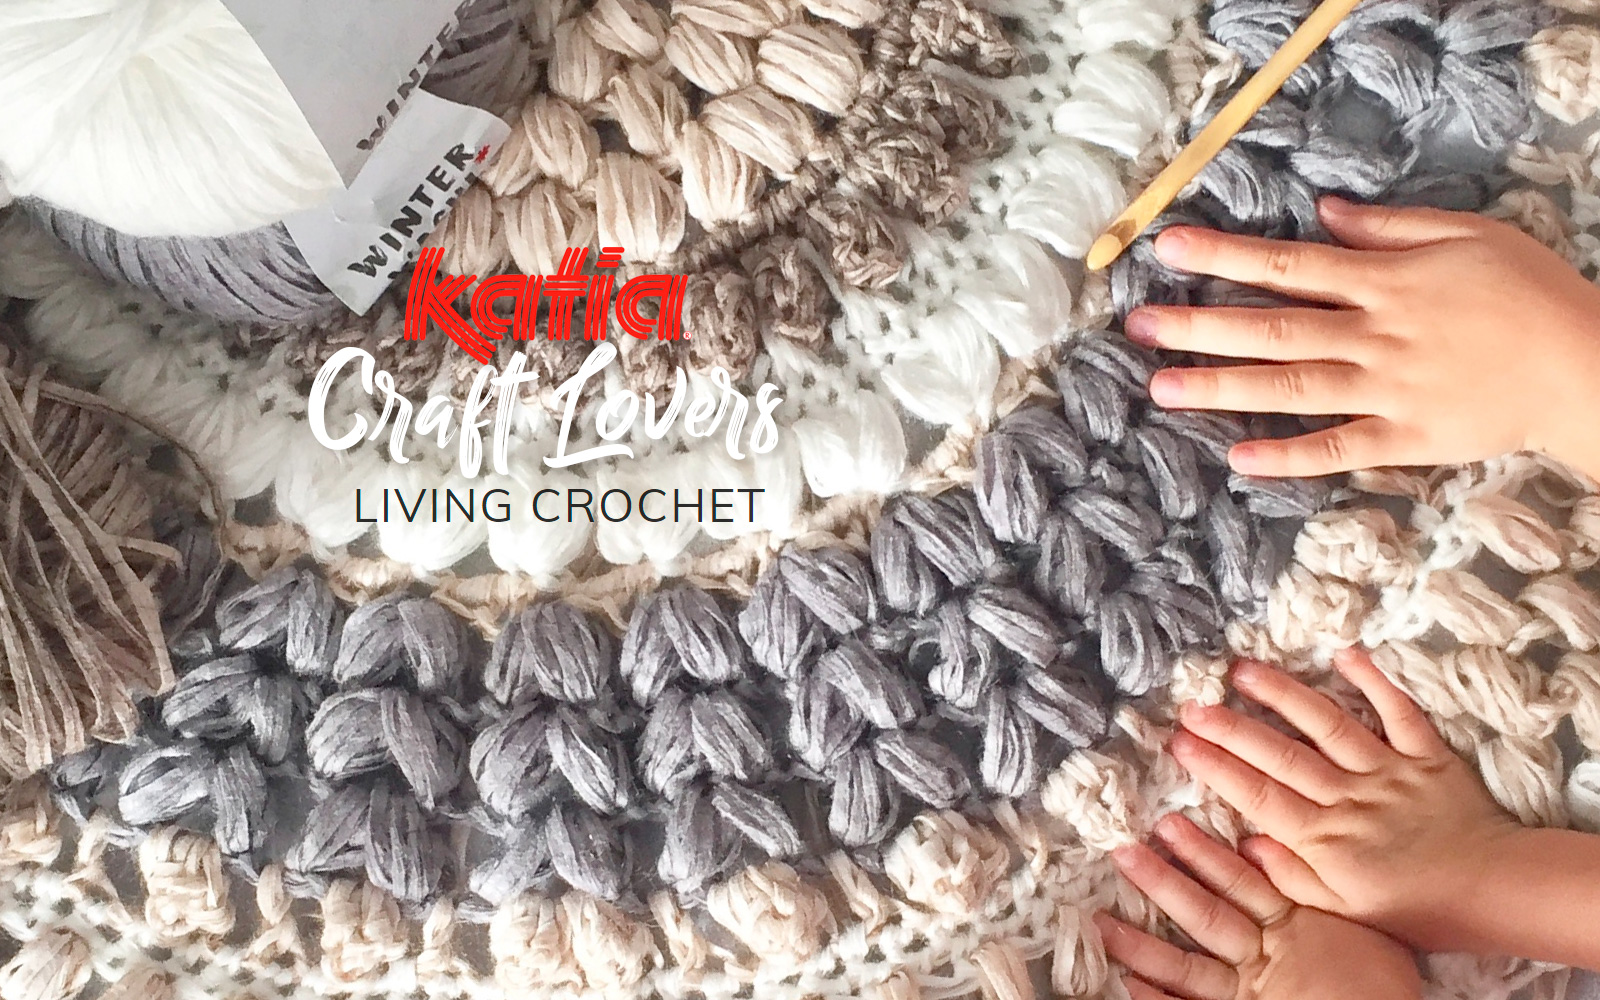 Wonderbaar Living Crochet leert je hoe je een vloerkleed moet haken met LL-18